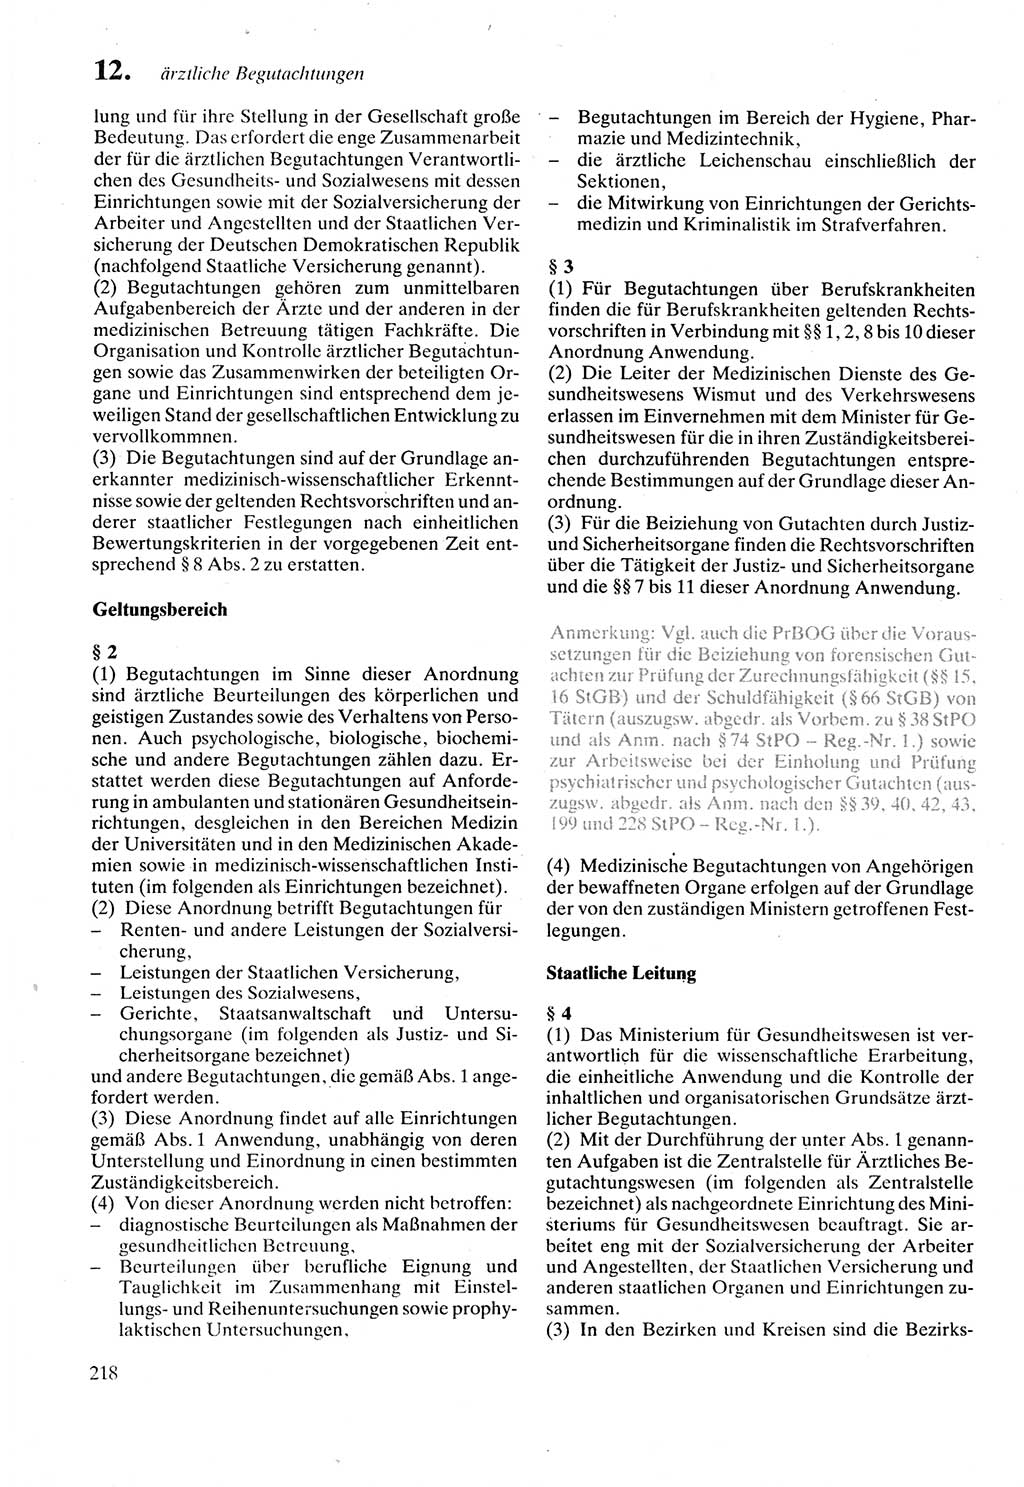 Strafprozeßordnung (StPO) der Deutschen Demokratischen Republik (DDR) sowie angrenzende Gesetze und Bestimmungen 1987, Seite 218 (StPO DDR Ges. Best. 1987, S. 218)